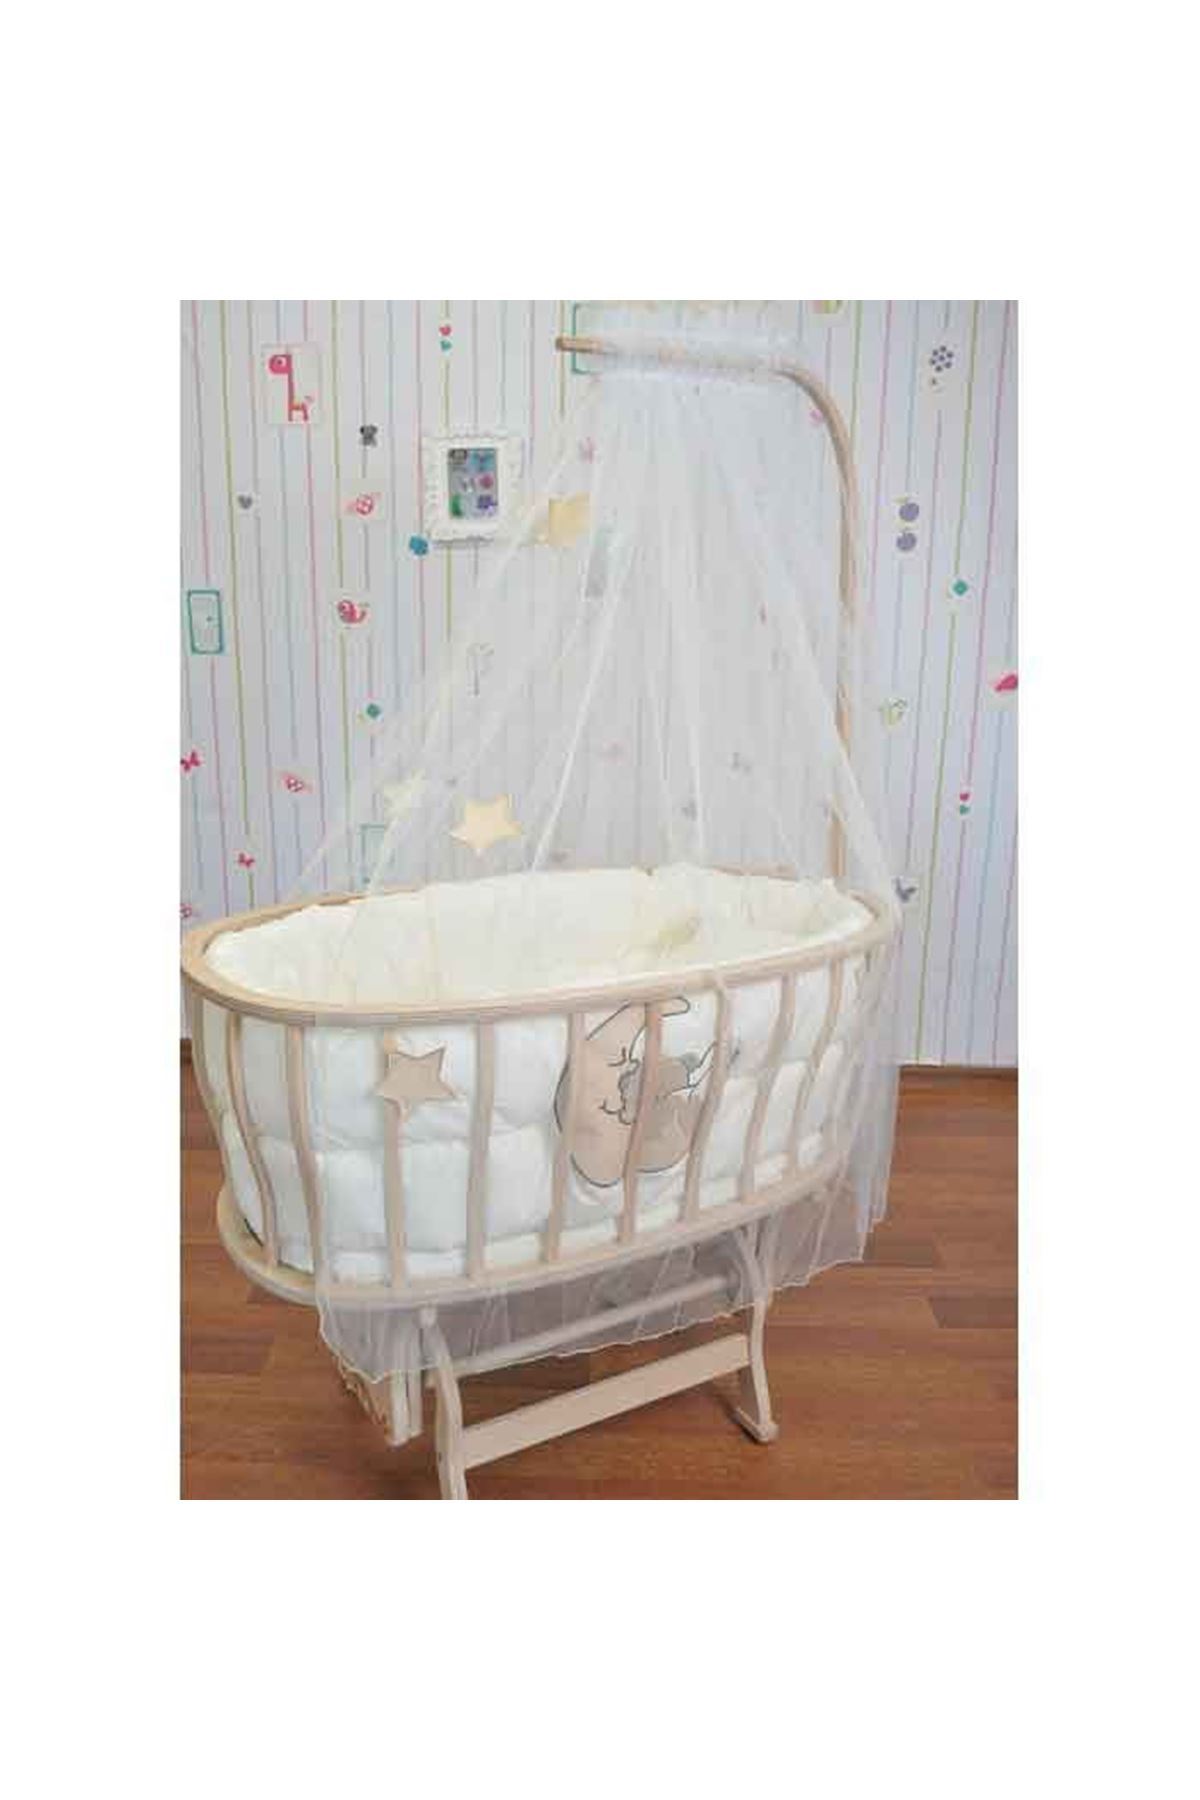 Wooden Basket Baby Cradle Brown Teddy Bear Sleeping Set